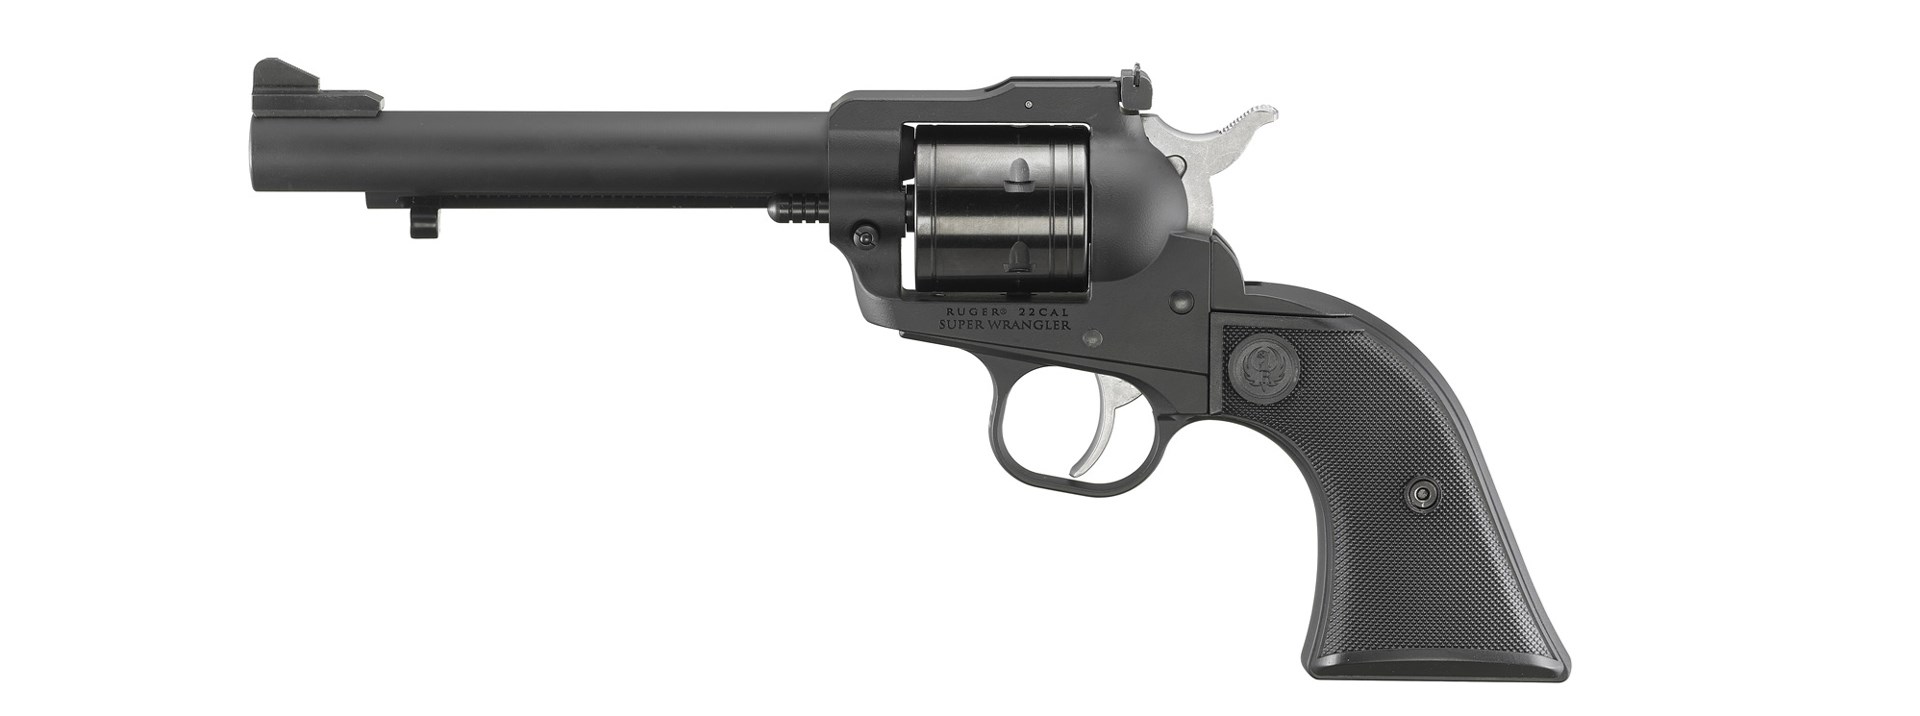 Ruger Super Wranlger left-side view black single-action revolver